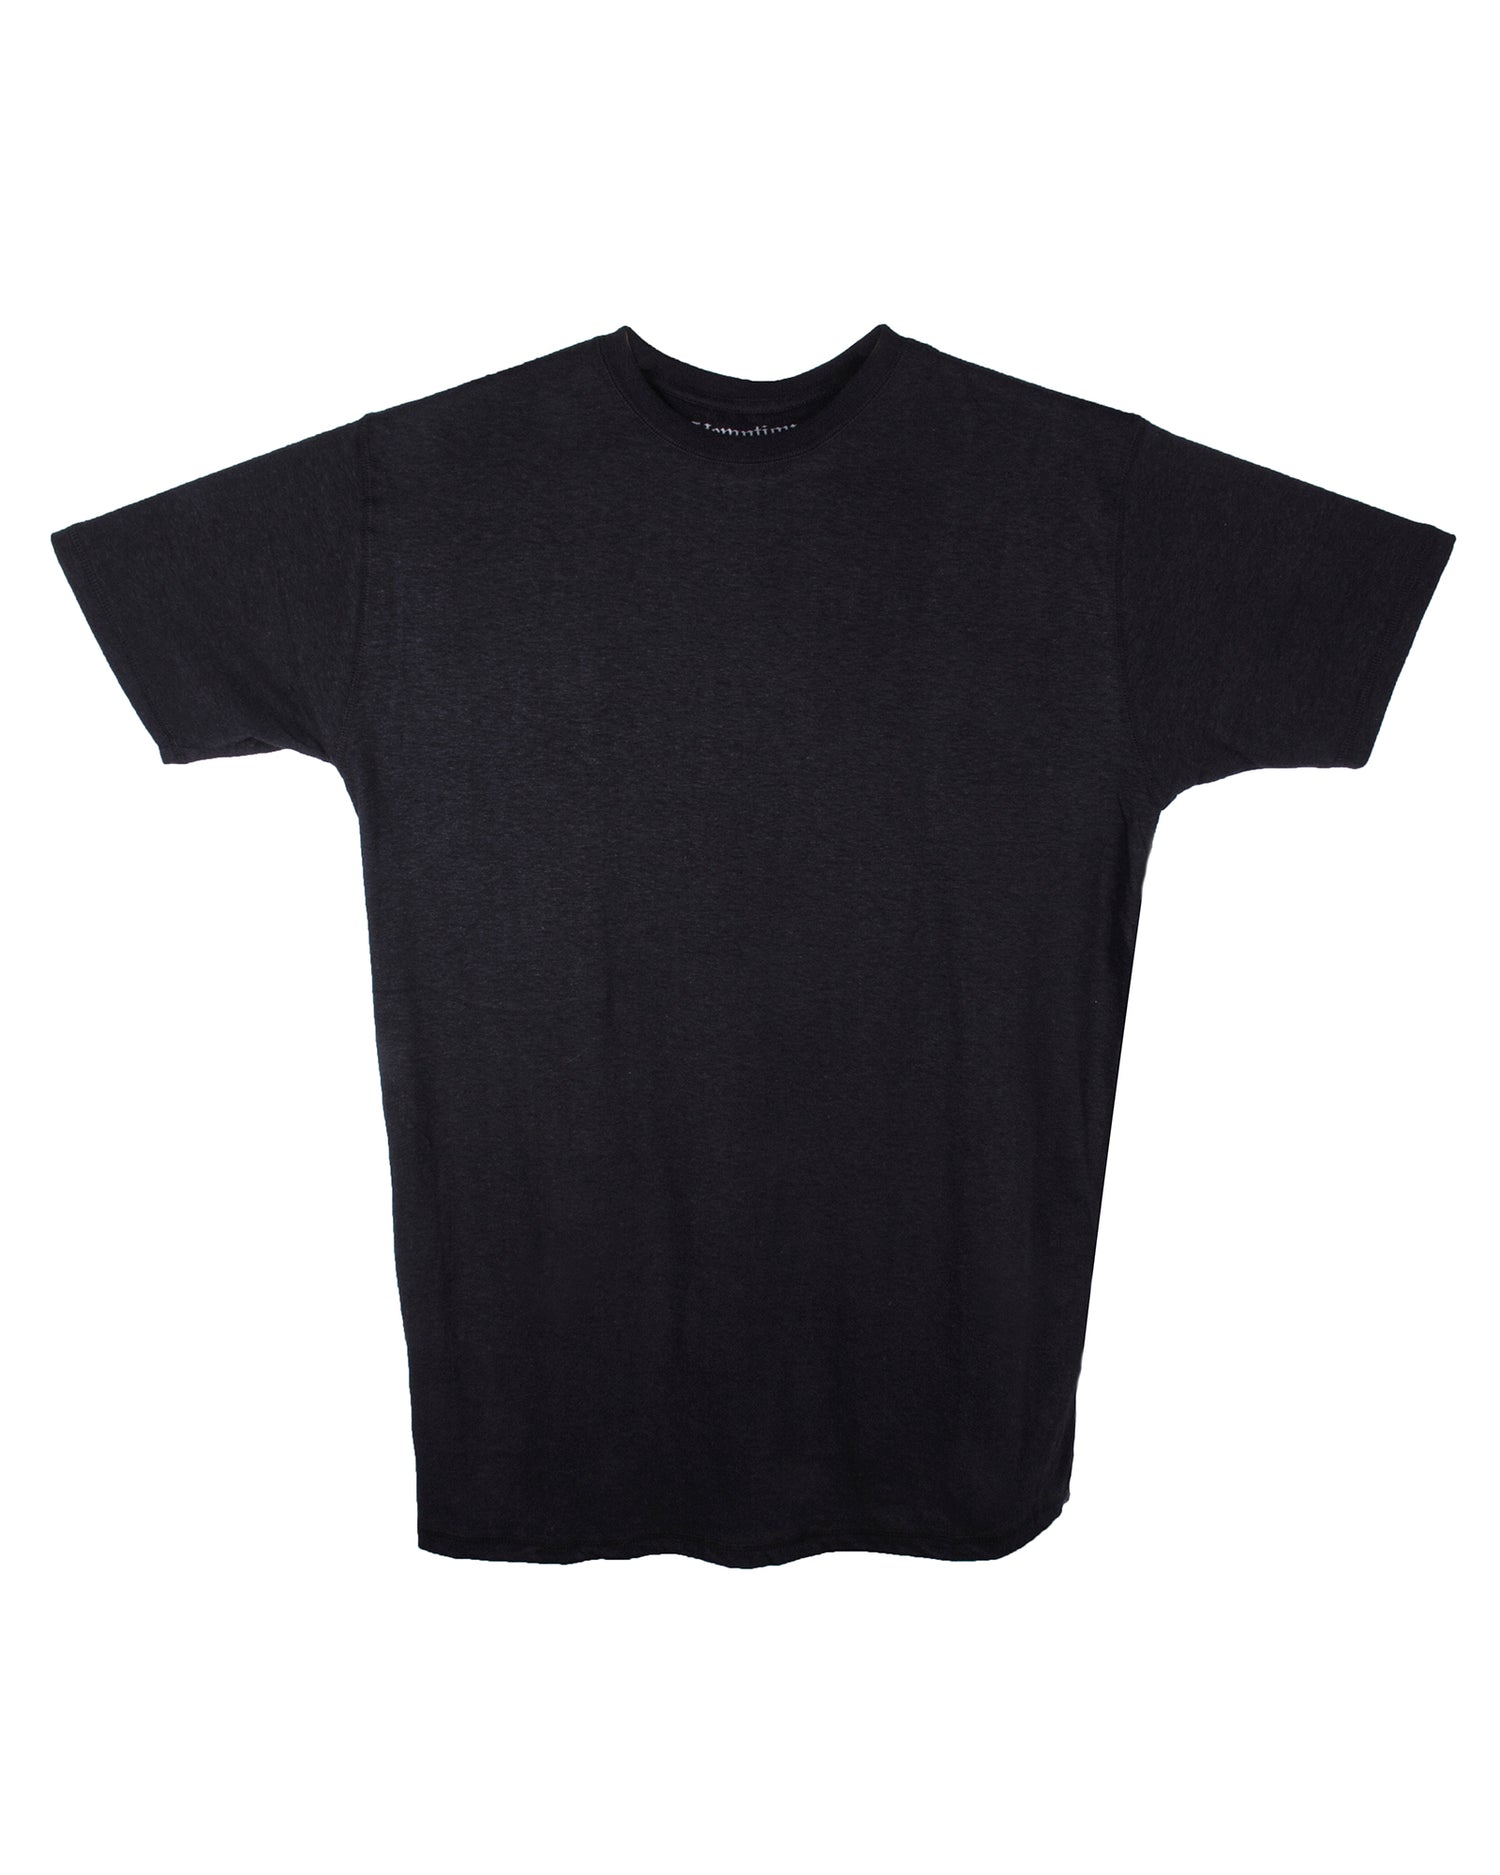 Fejde Playful brændstof Hemptique Hemp Blank T-Shirts - Organic Cotton/Hemp Blend T-shirt